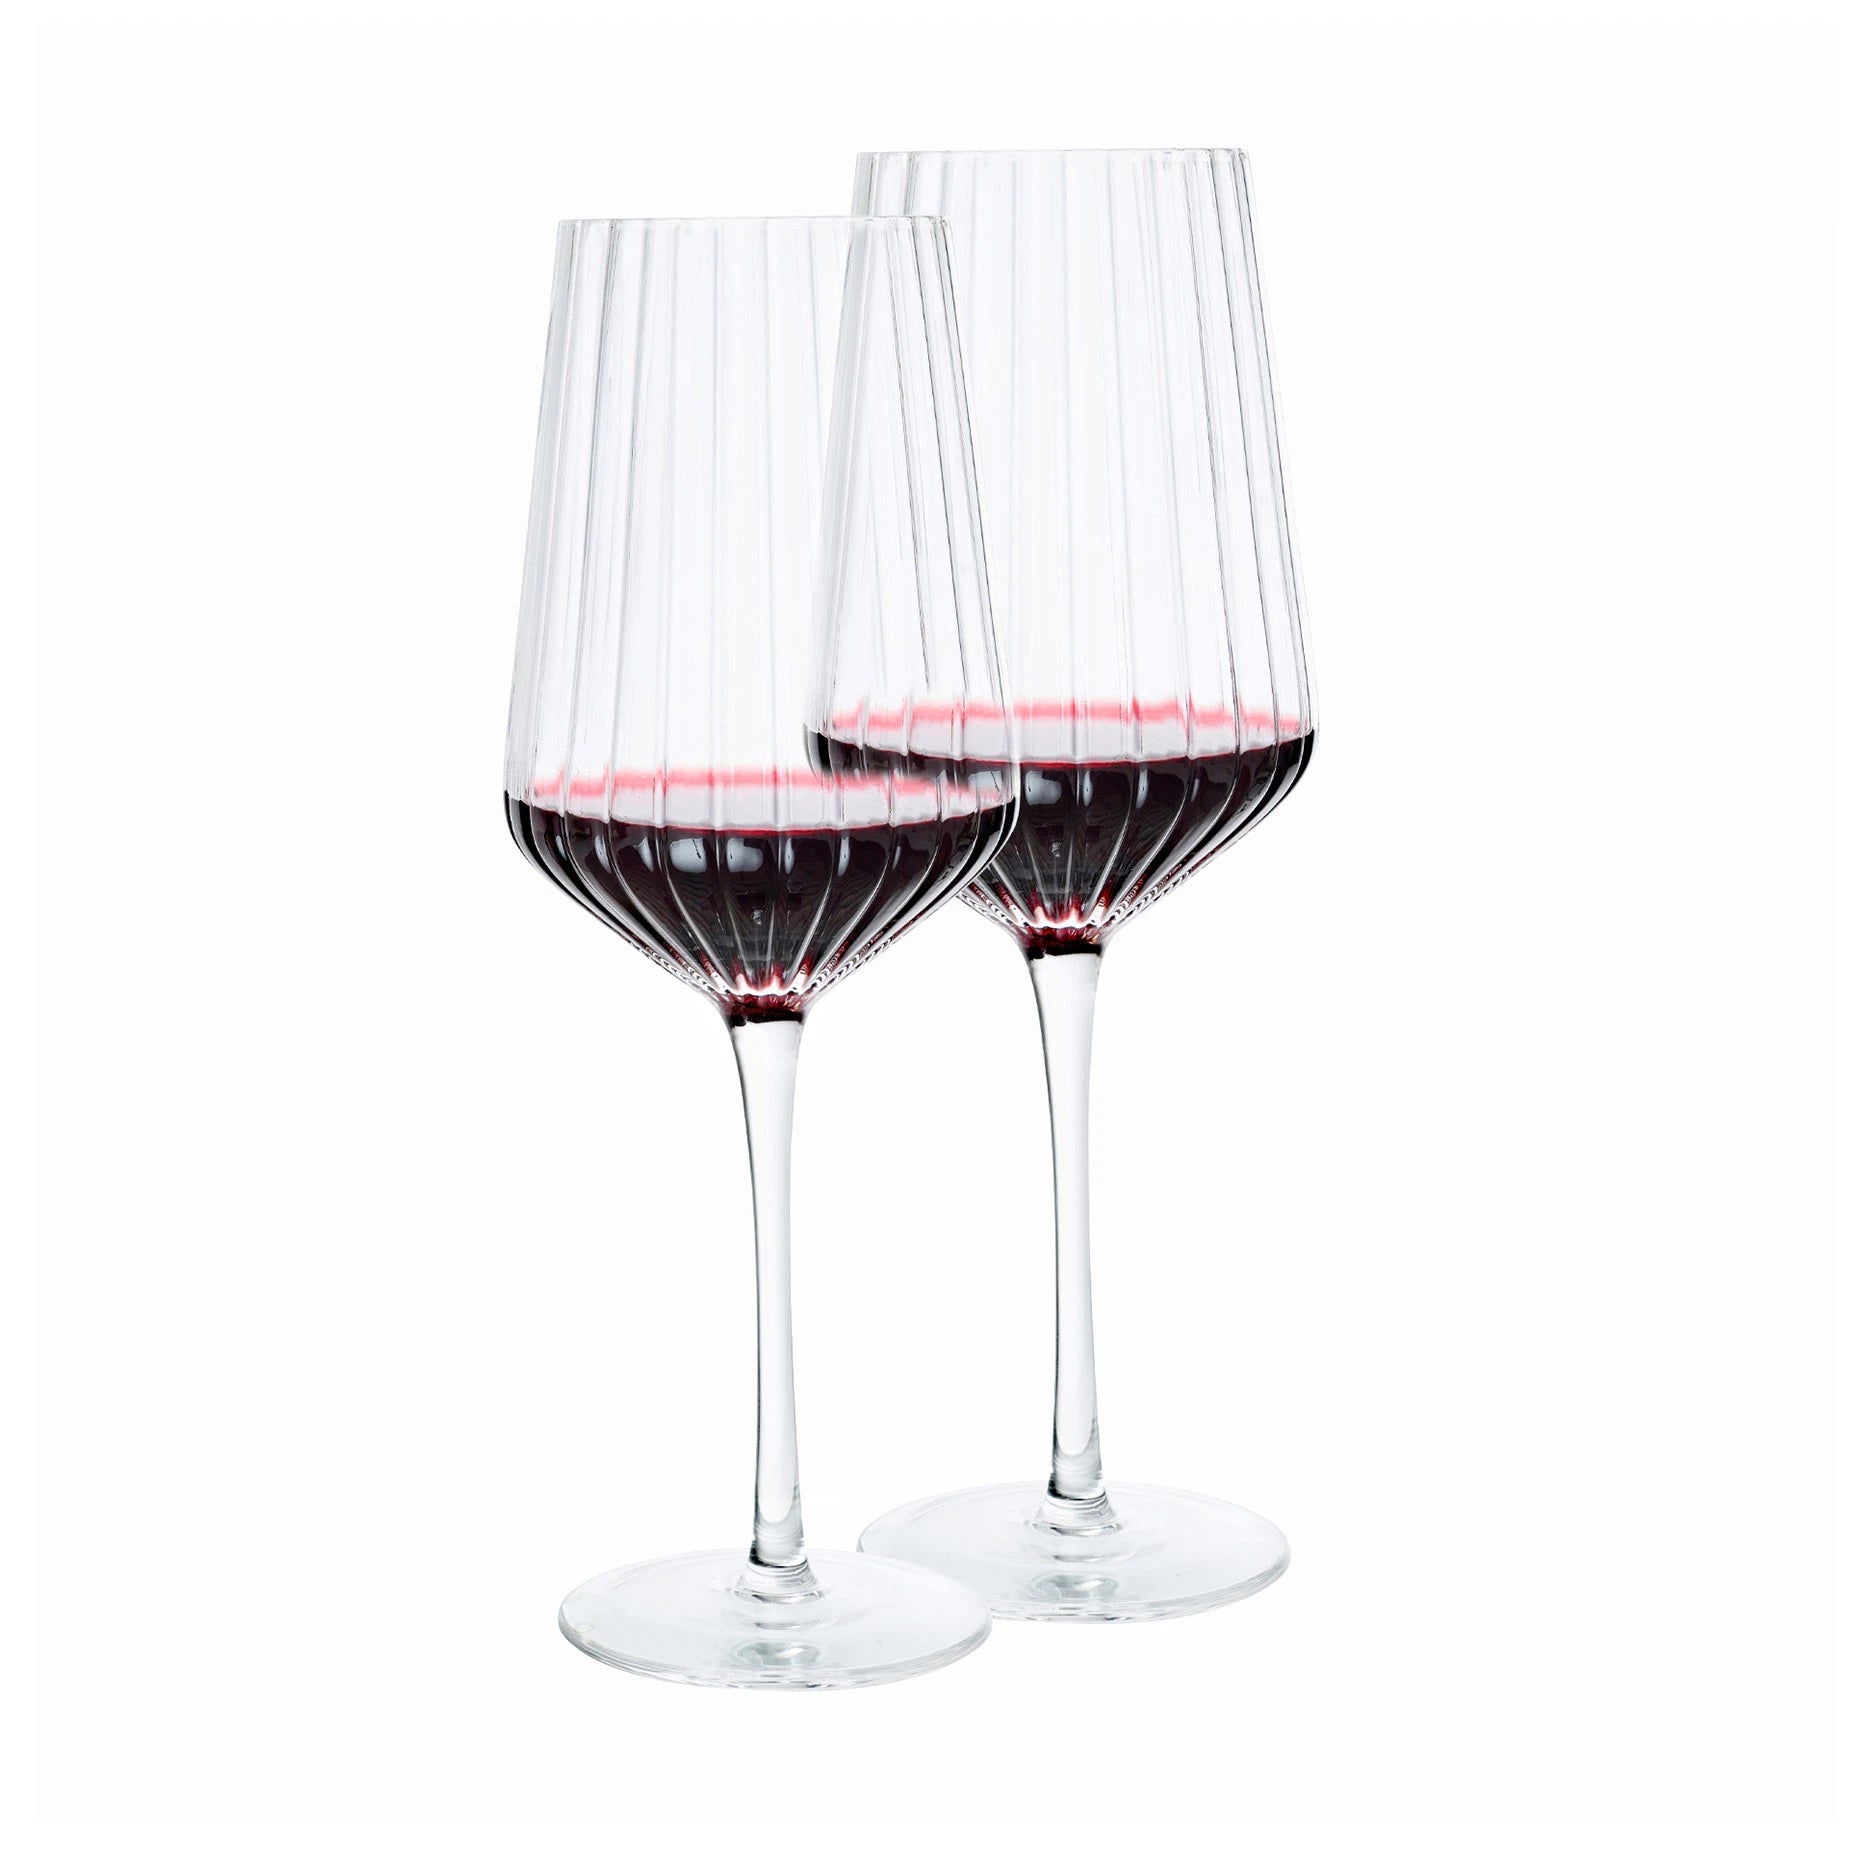 Glamour Rotweinglas 2 Stk. - Transparent - Sinnerup von Sinnerup